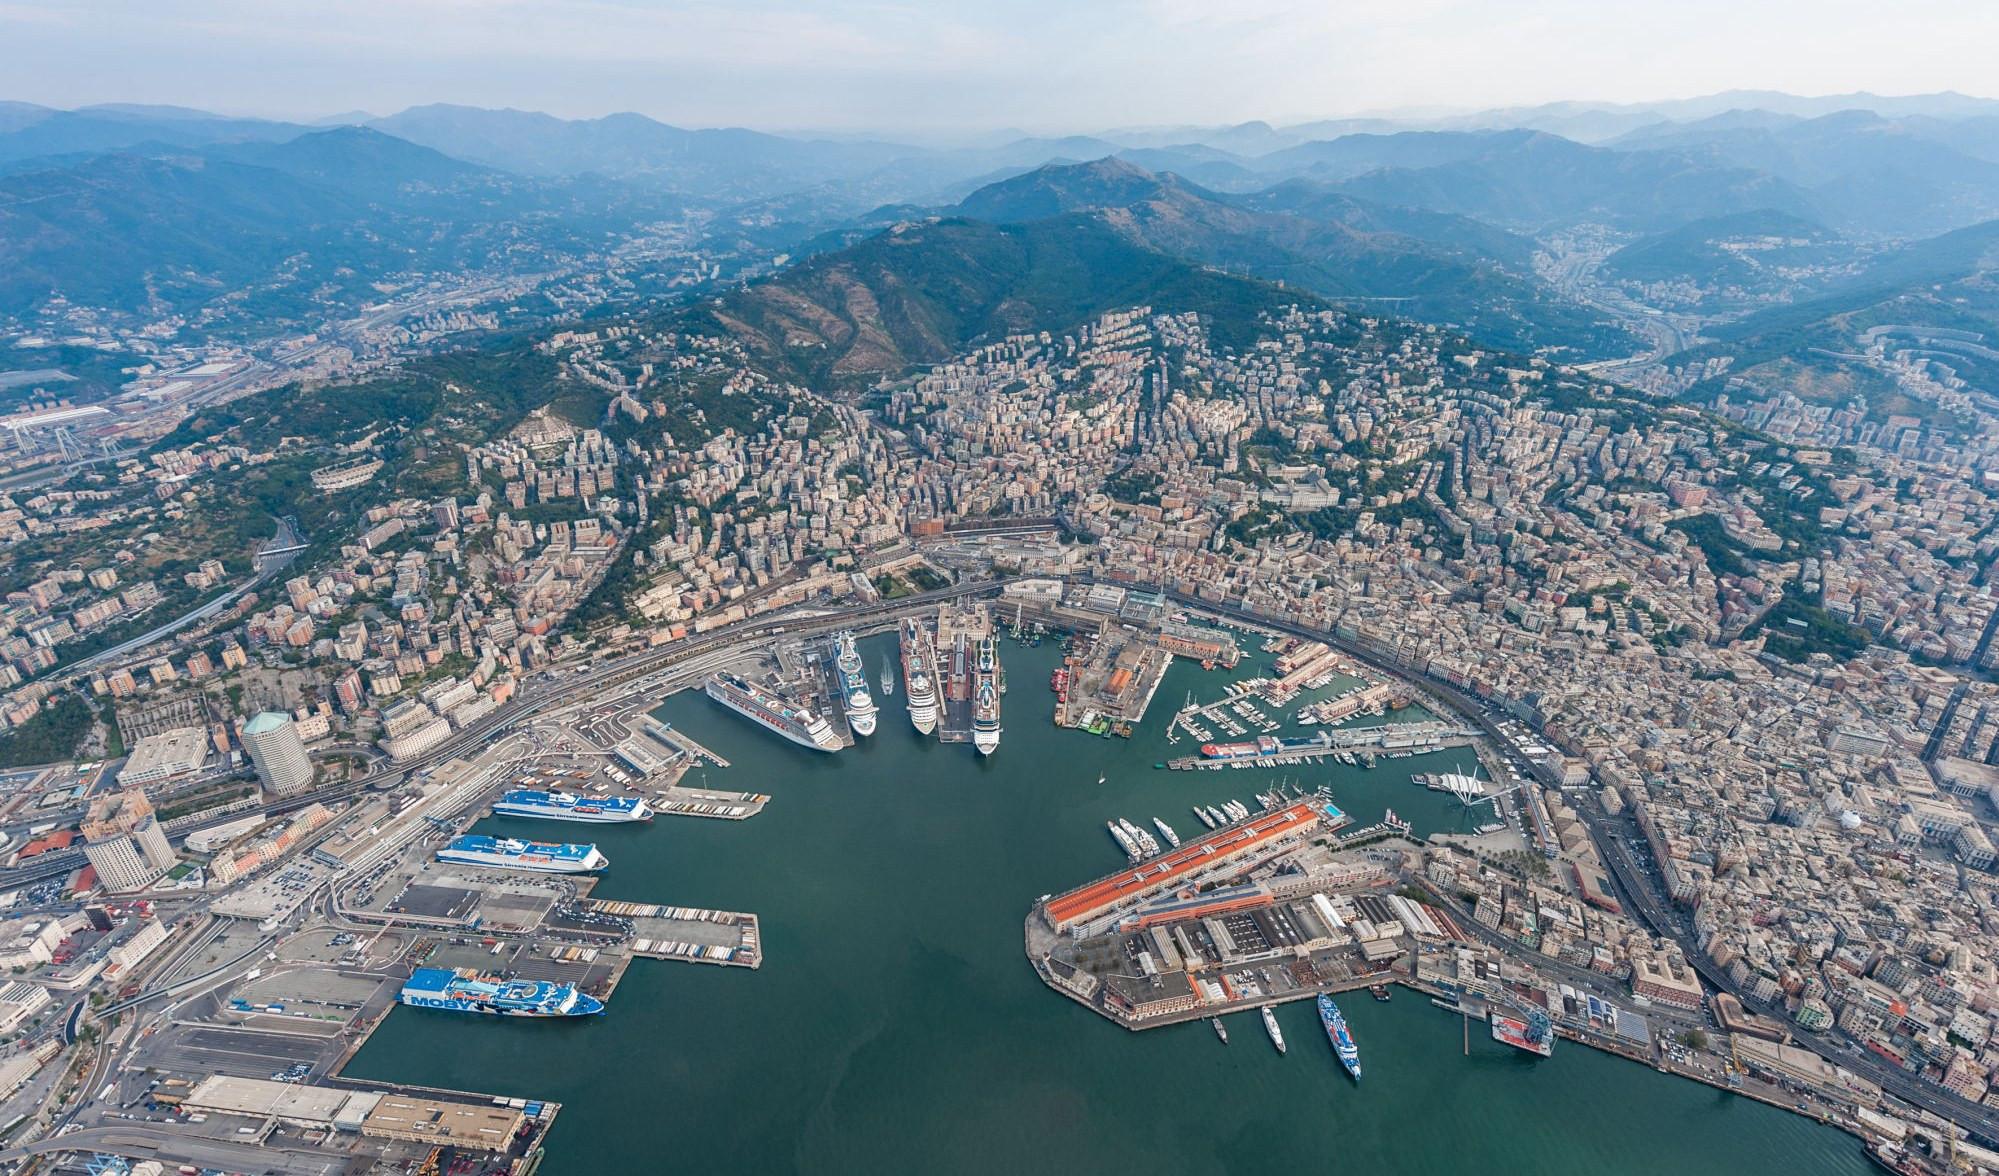 Porti Genova, Savona, Vado: approvato il bilancio, previste 50 assunzioni